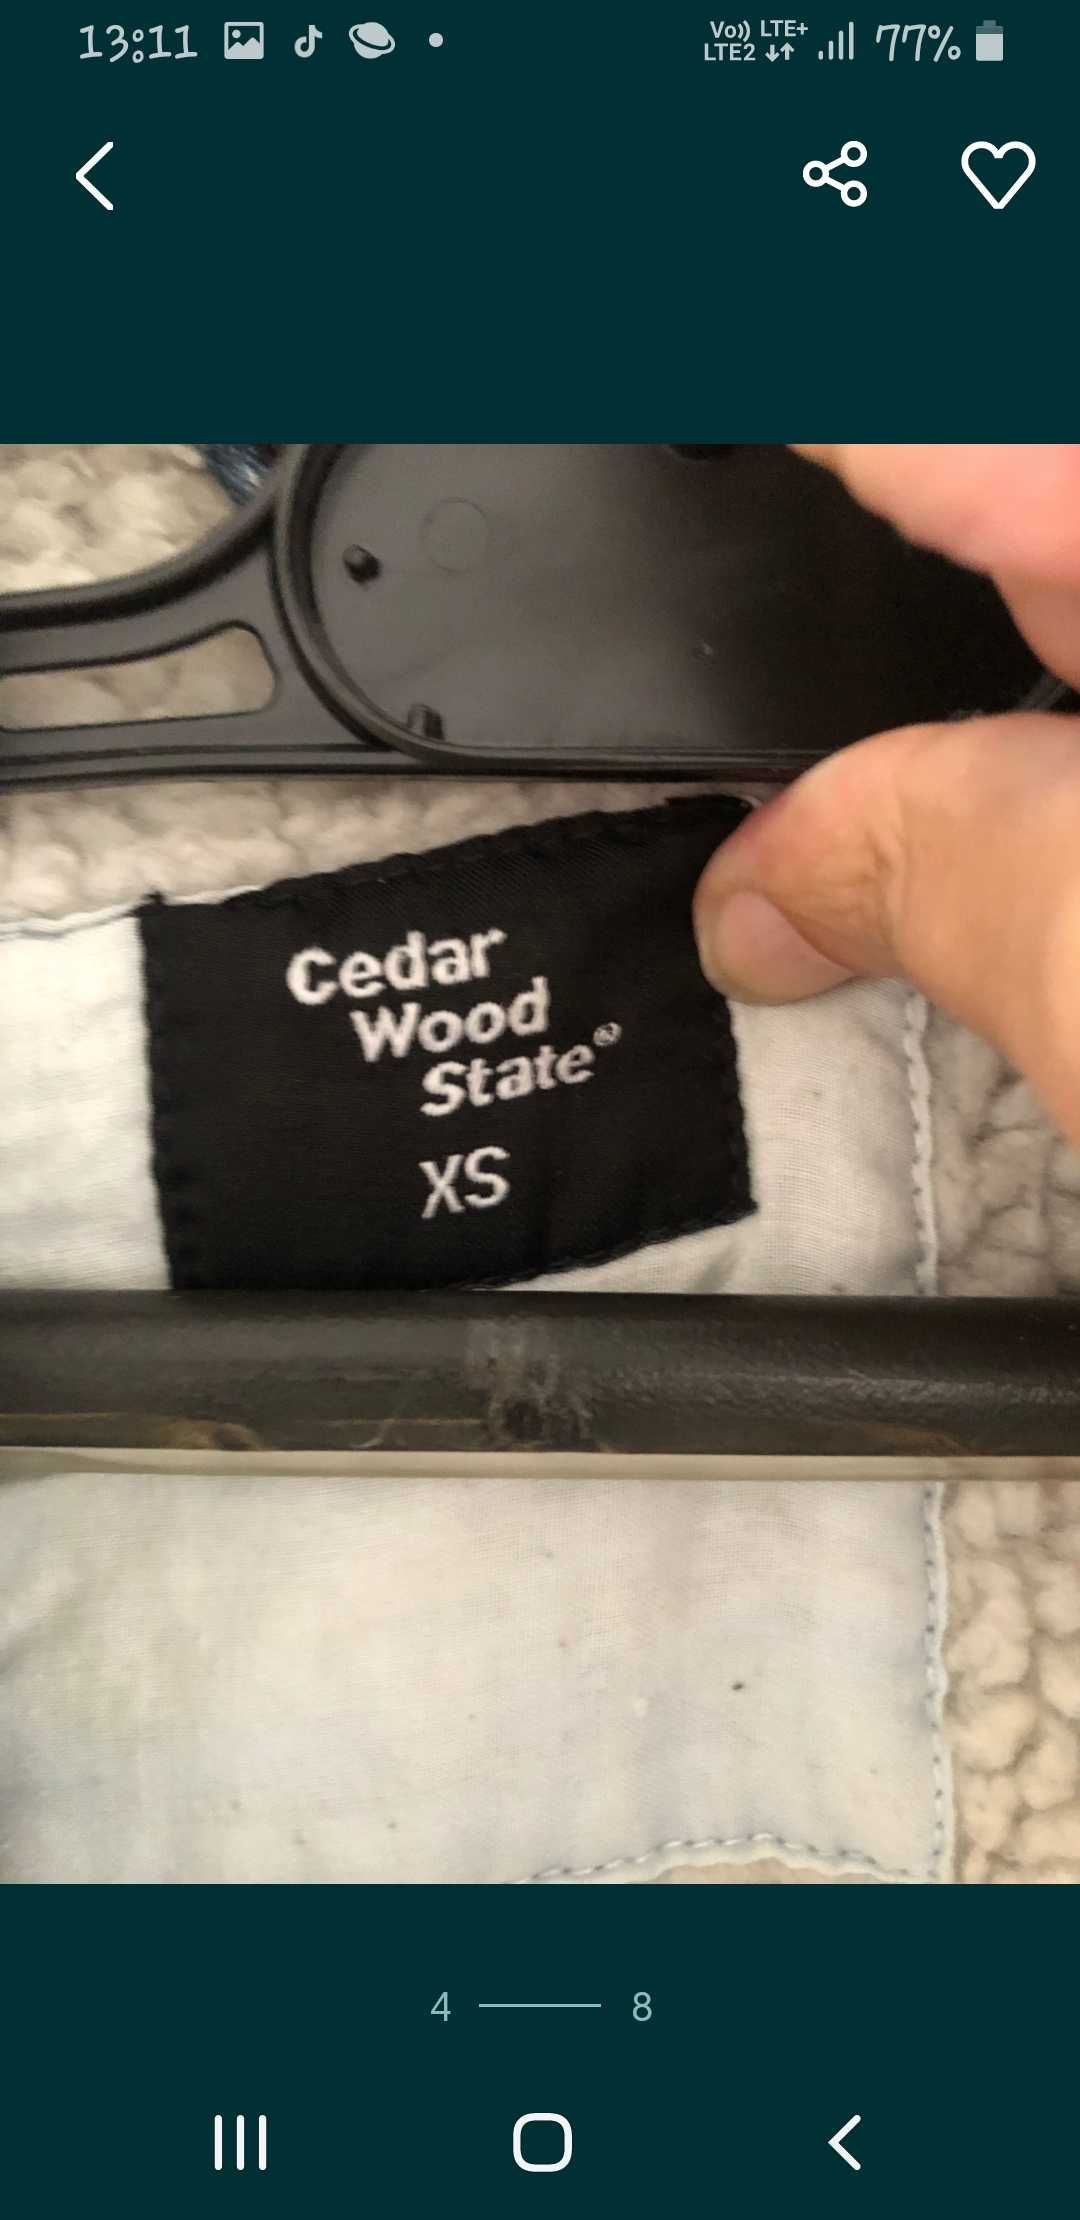 Kurtka katana jeansowa rozm xs na misiu Cedar wood